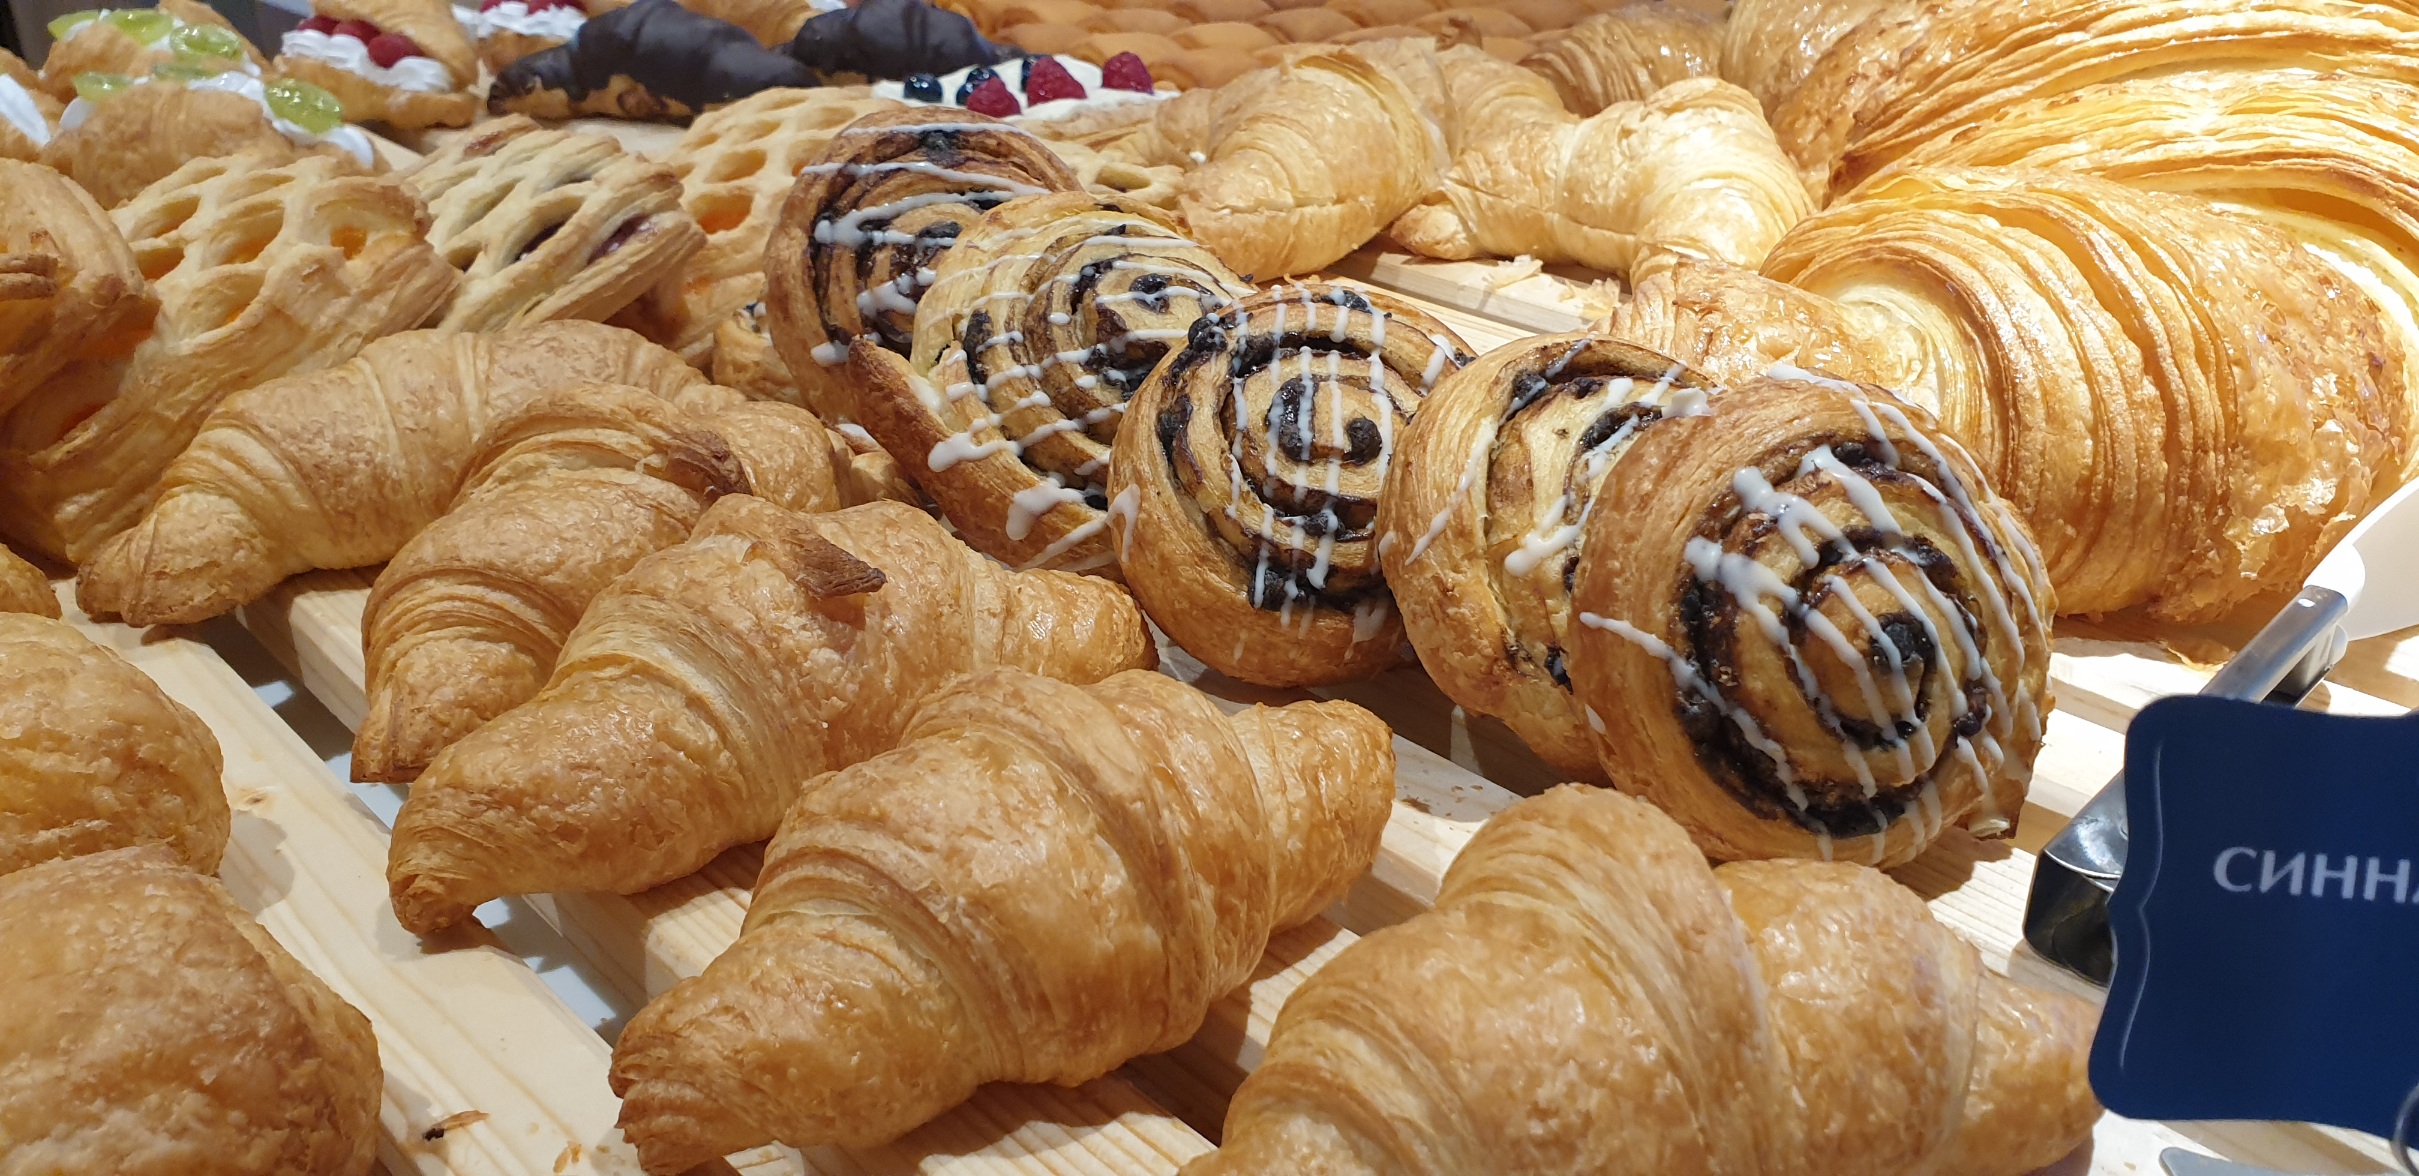 Фото: Талх чихэр компани Delice pastry үйлдвэрээ нээлээ